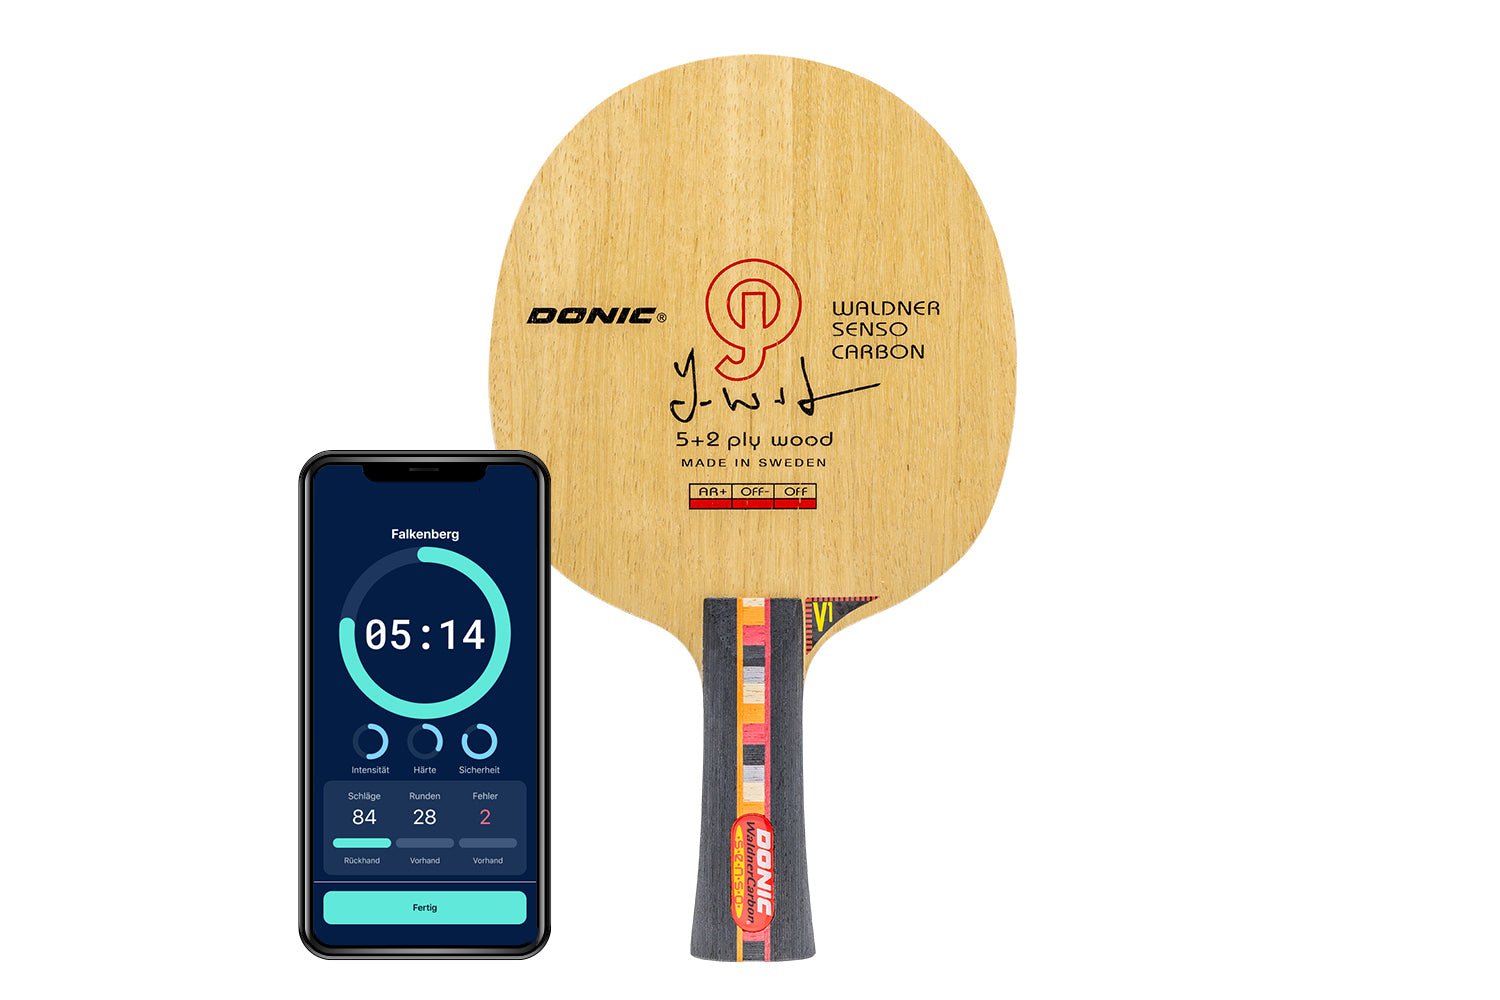 DONIC Waldner Senso Carbon Tischtennisschläger mit konkaven Griff und Smartphone zeigt Daten des Schlägers vor weißem Hintergrund